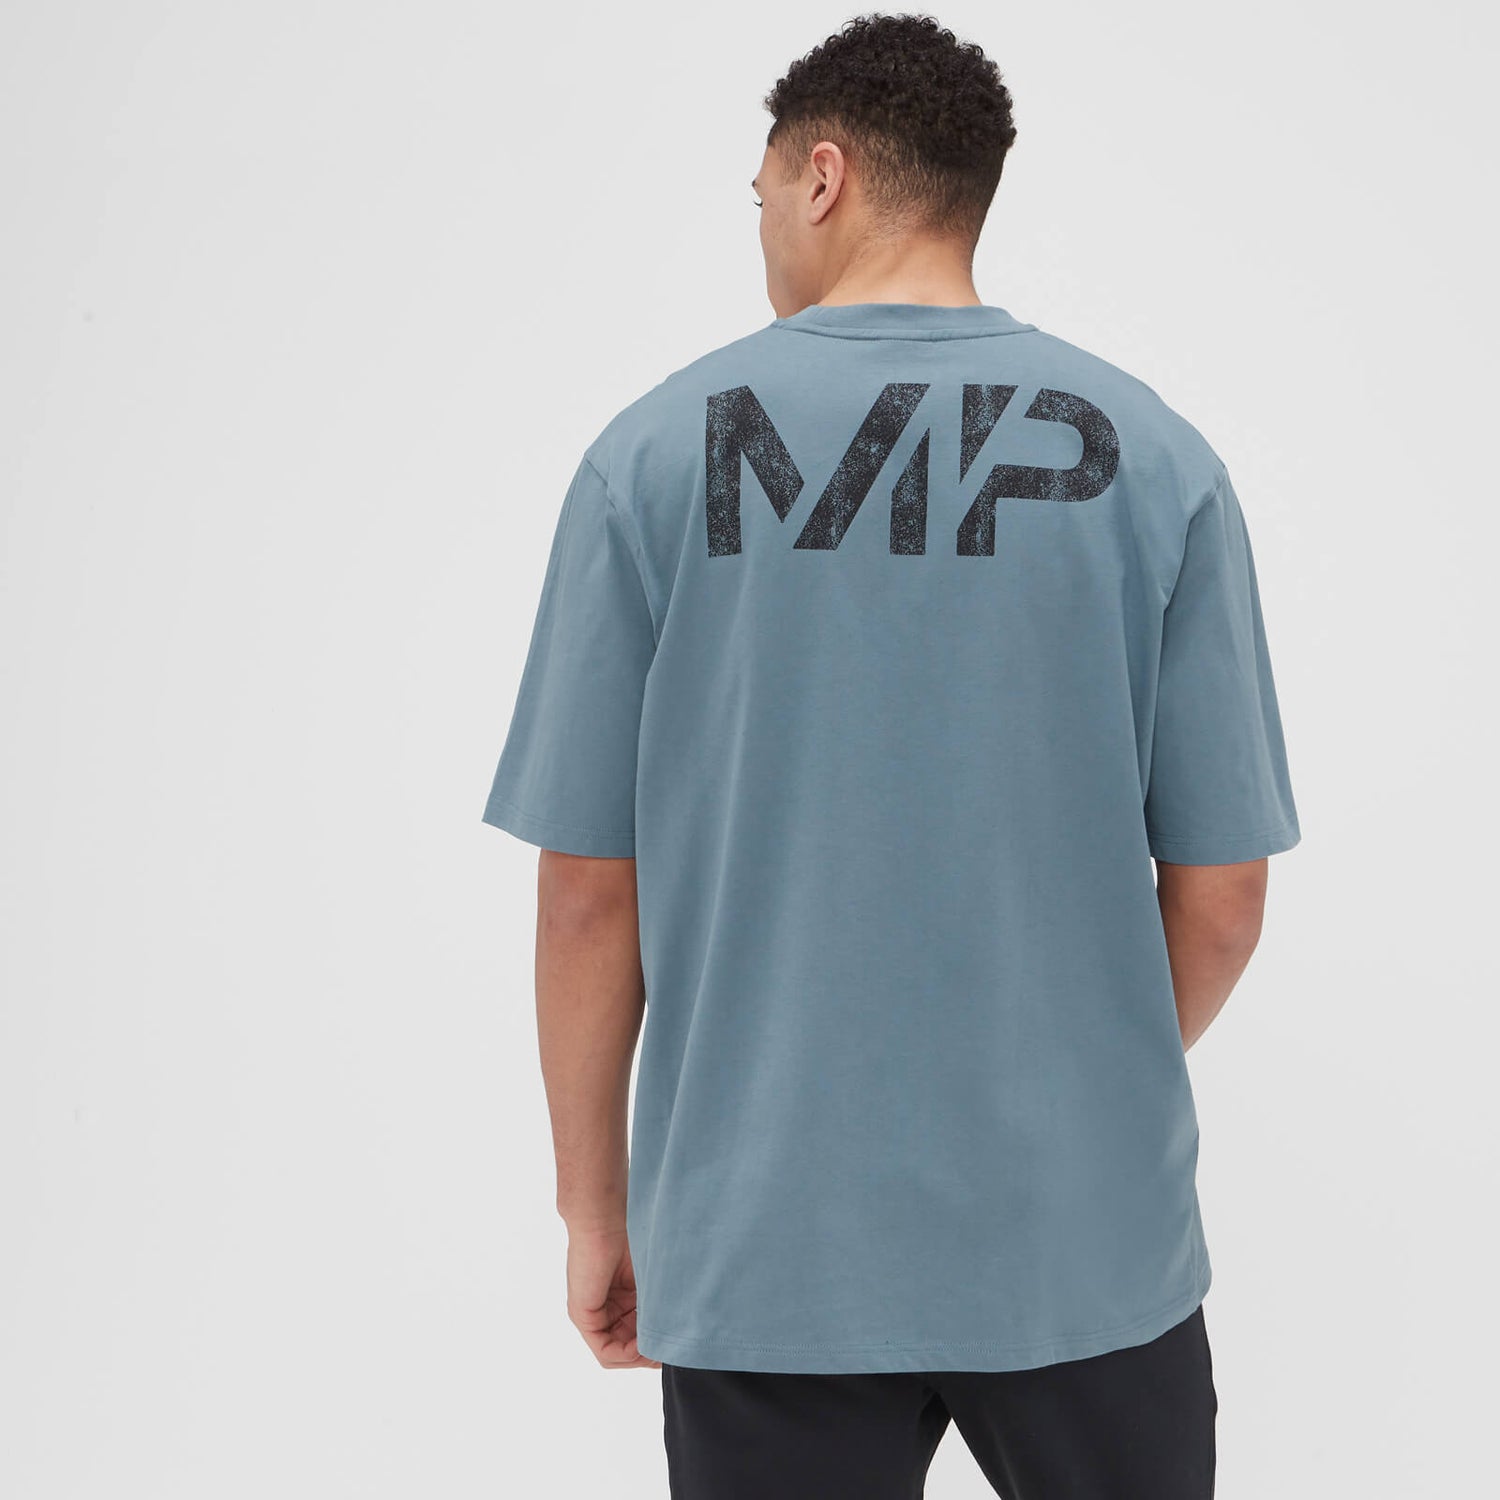 MP メンズ グリット グラフィック オーバーサイズ Tシャツ - ペブル ブルー